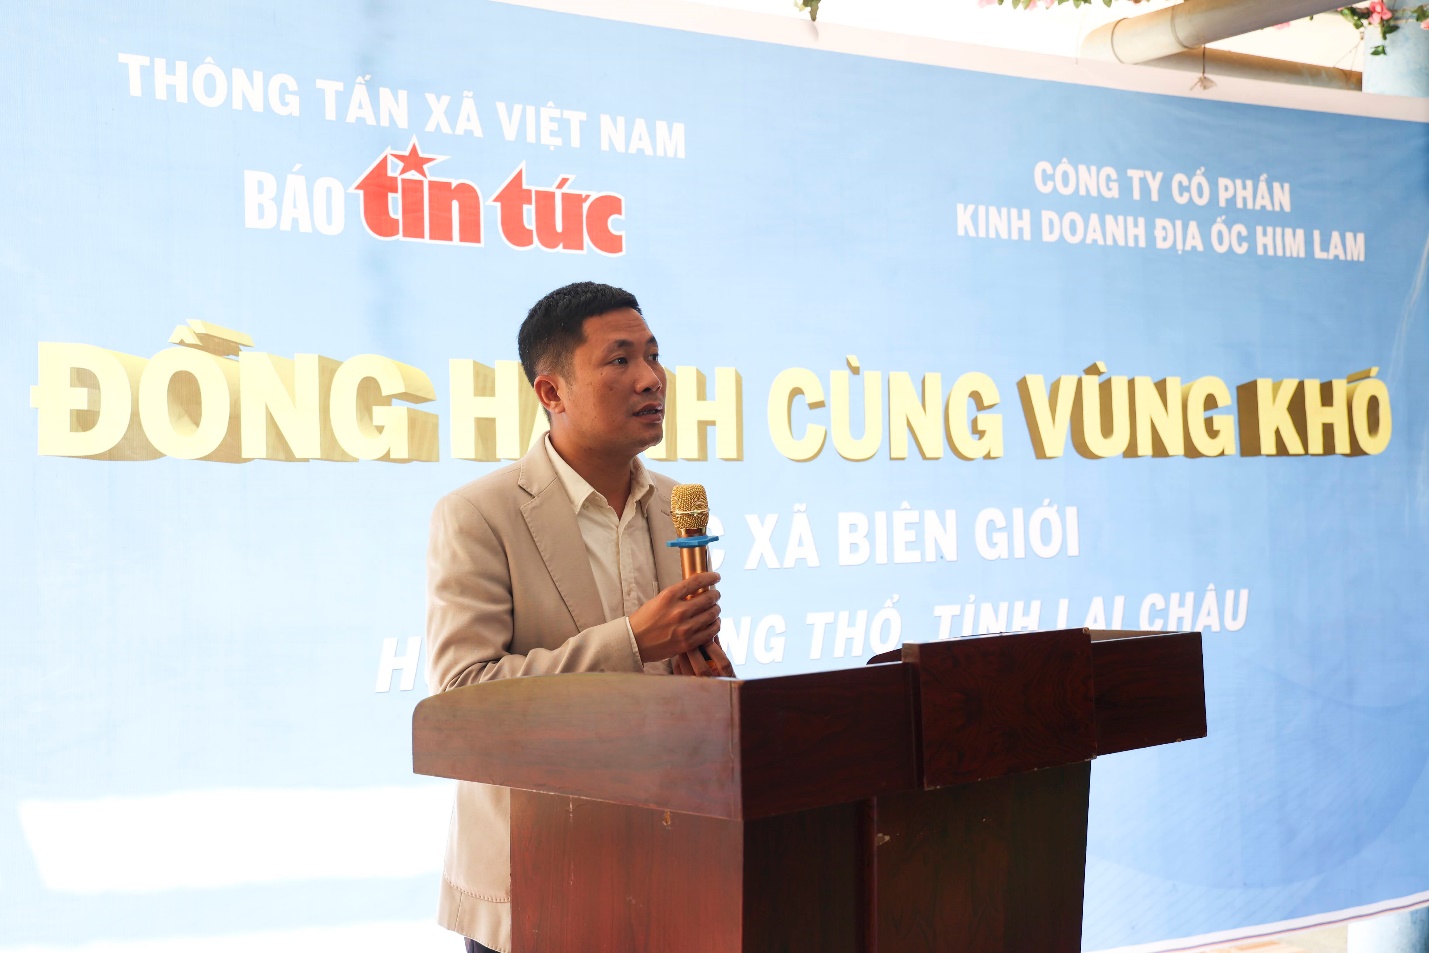 Him Lam Land hỗ trợ 300 triệu đồng cho 2 điểm trường khó khăn tại Phong Thổ, Lai Châu - Ảnh 2.